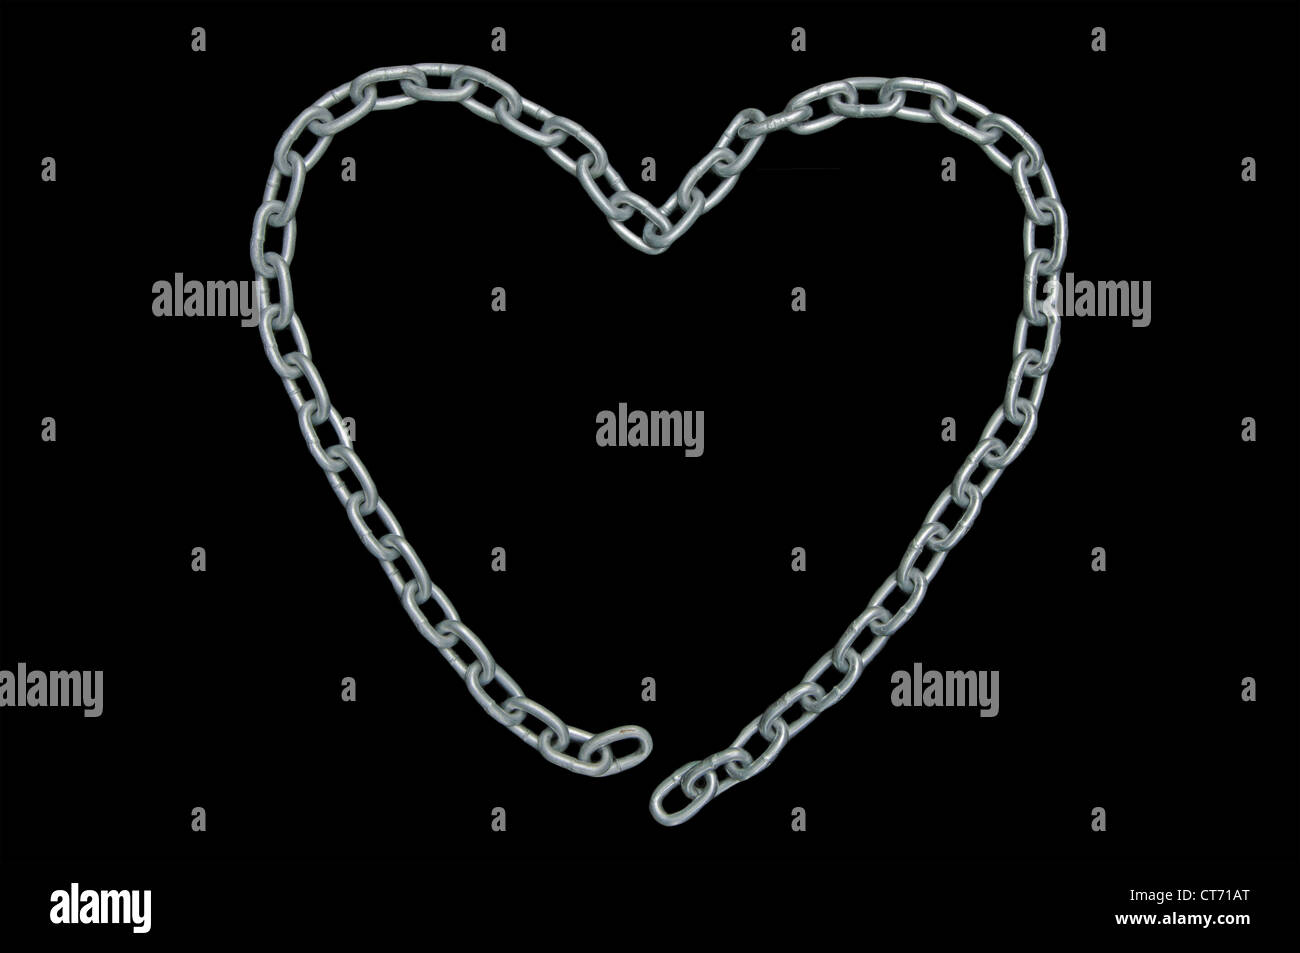 En forma de corazón con cadena de eslabones desconectados (amor no correspondido), aislados en negro Foto de stock